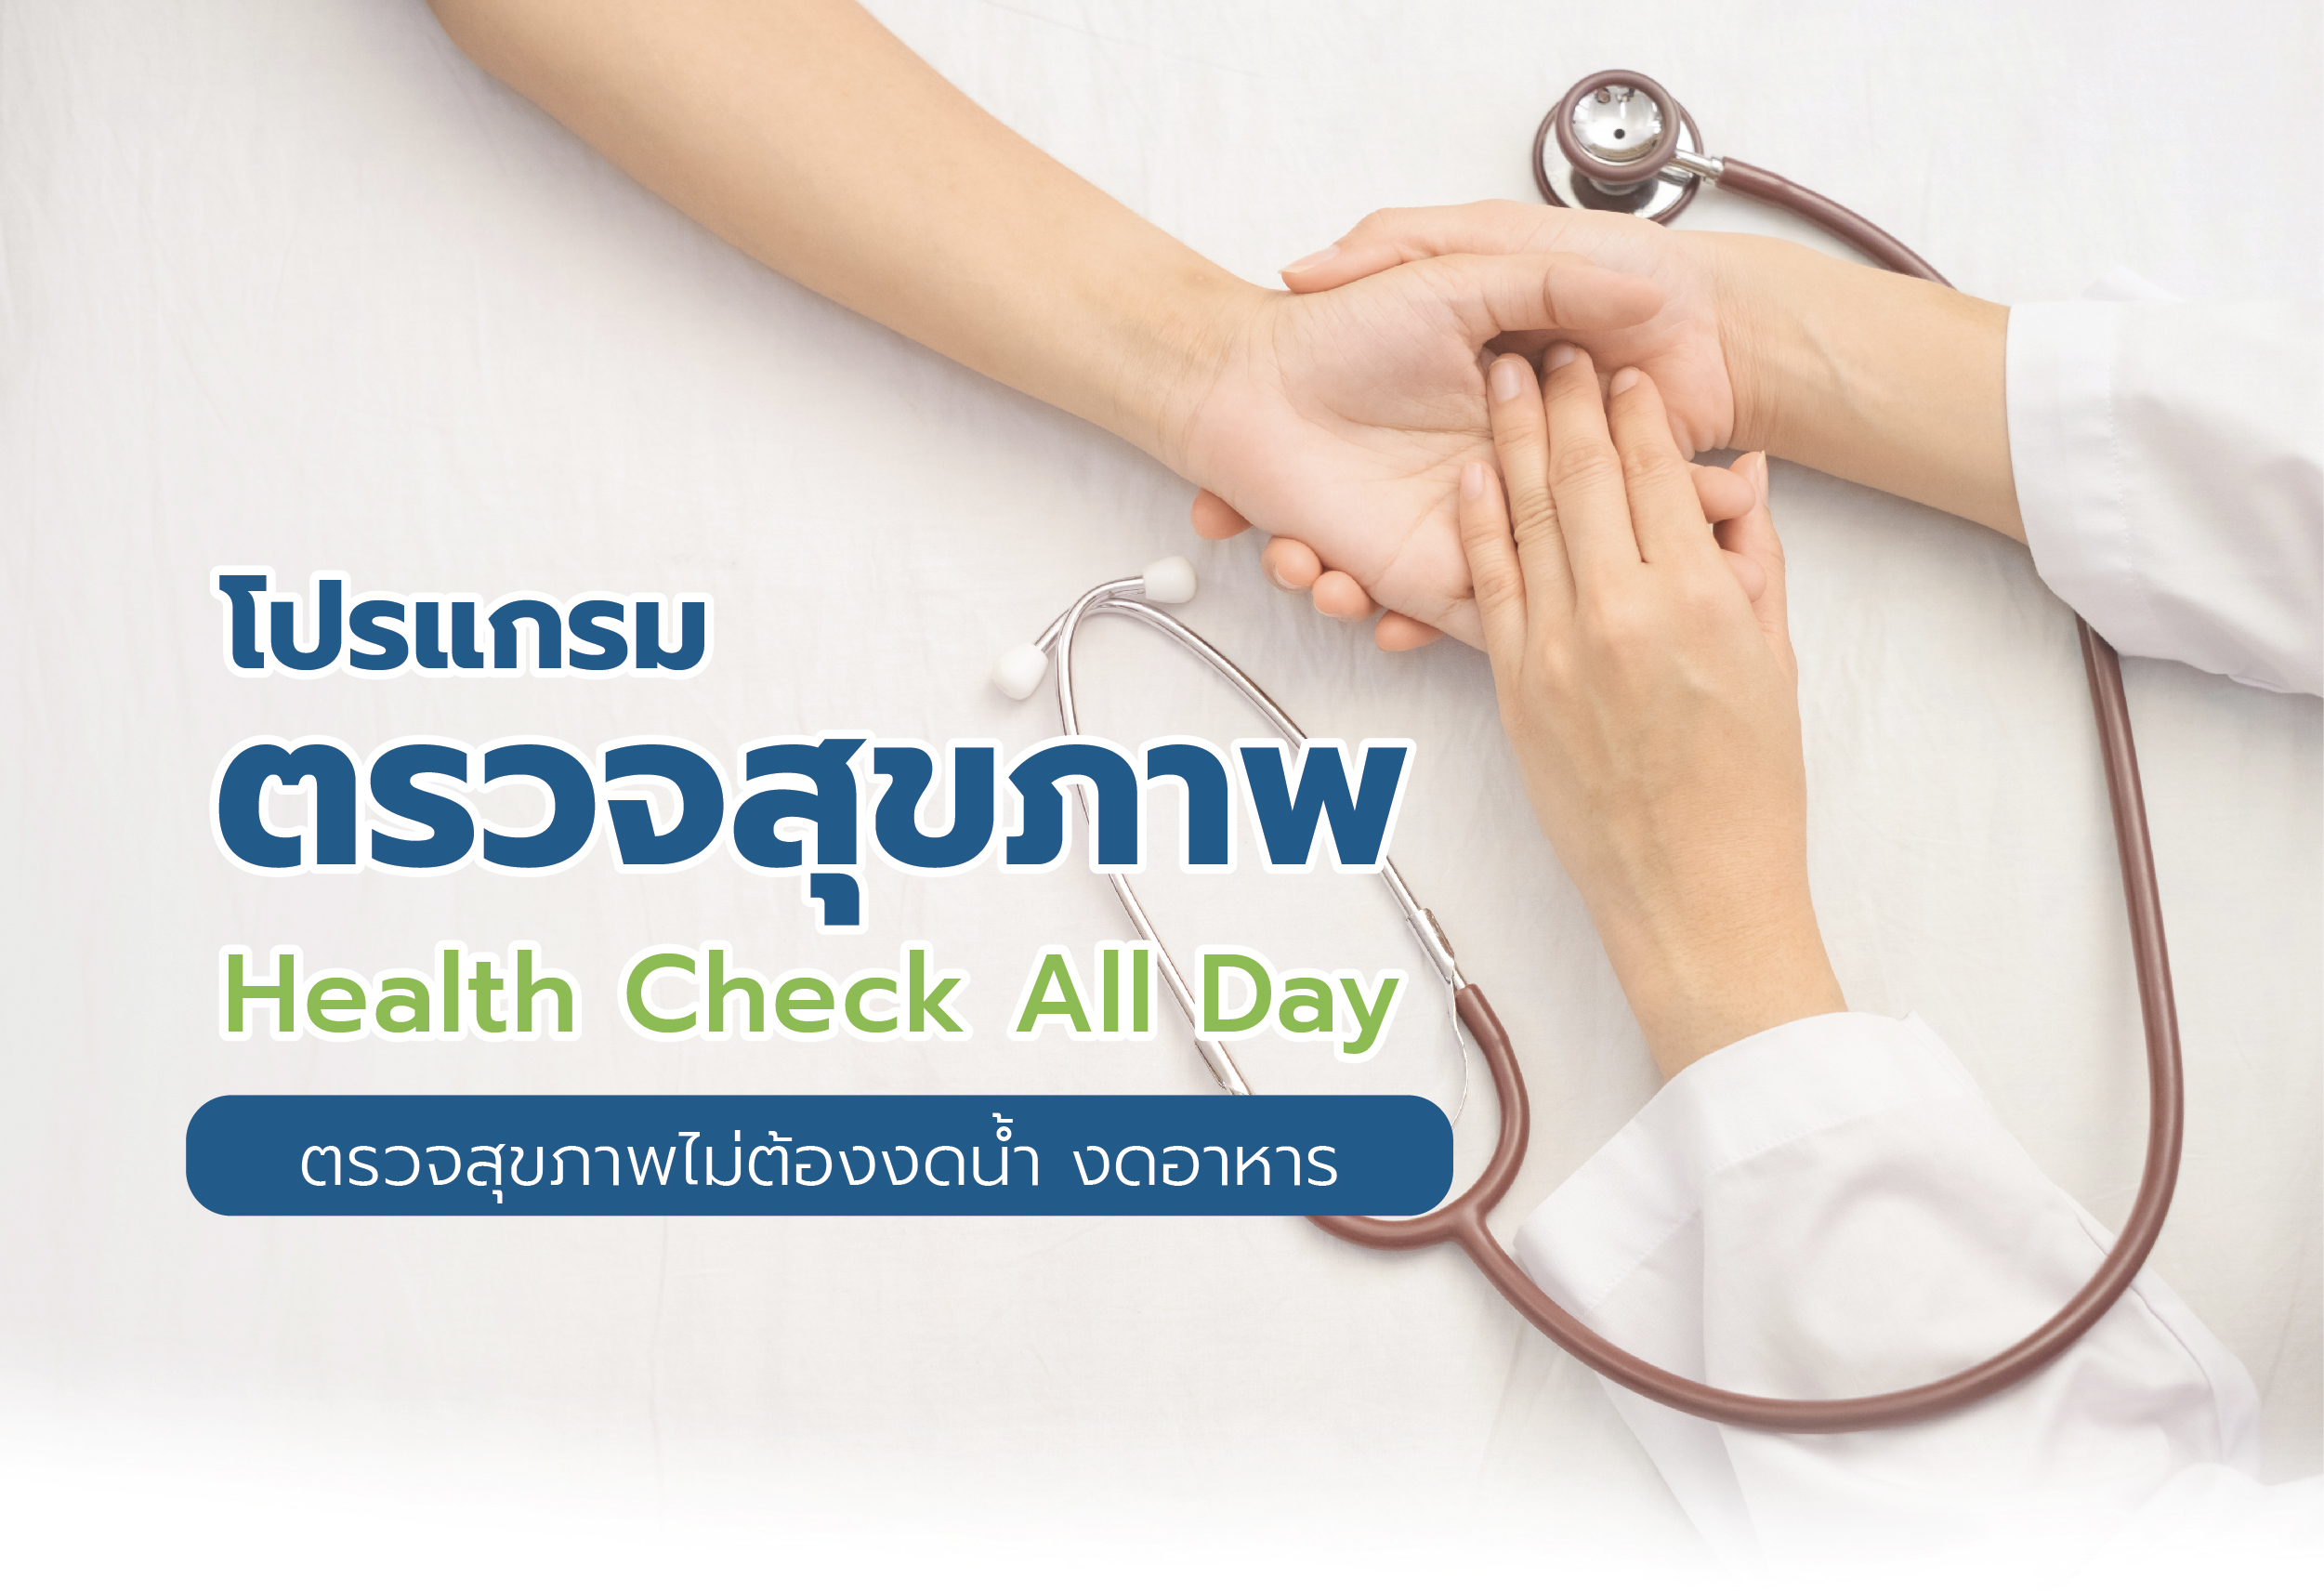 โปรแกรมตรวจสุขภาพ Health Check All Day